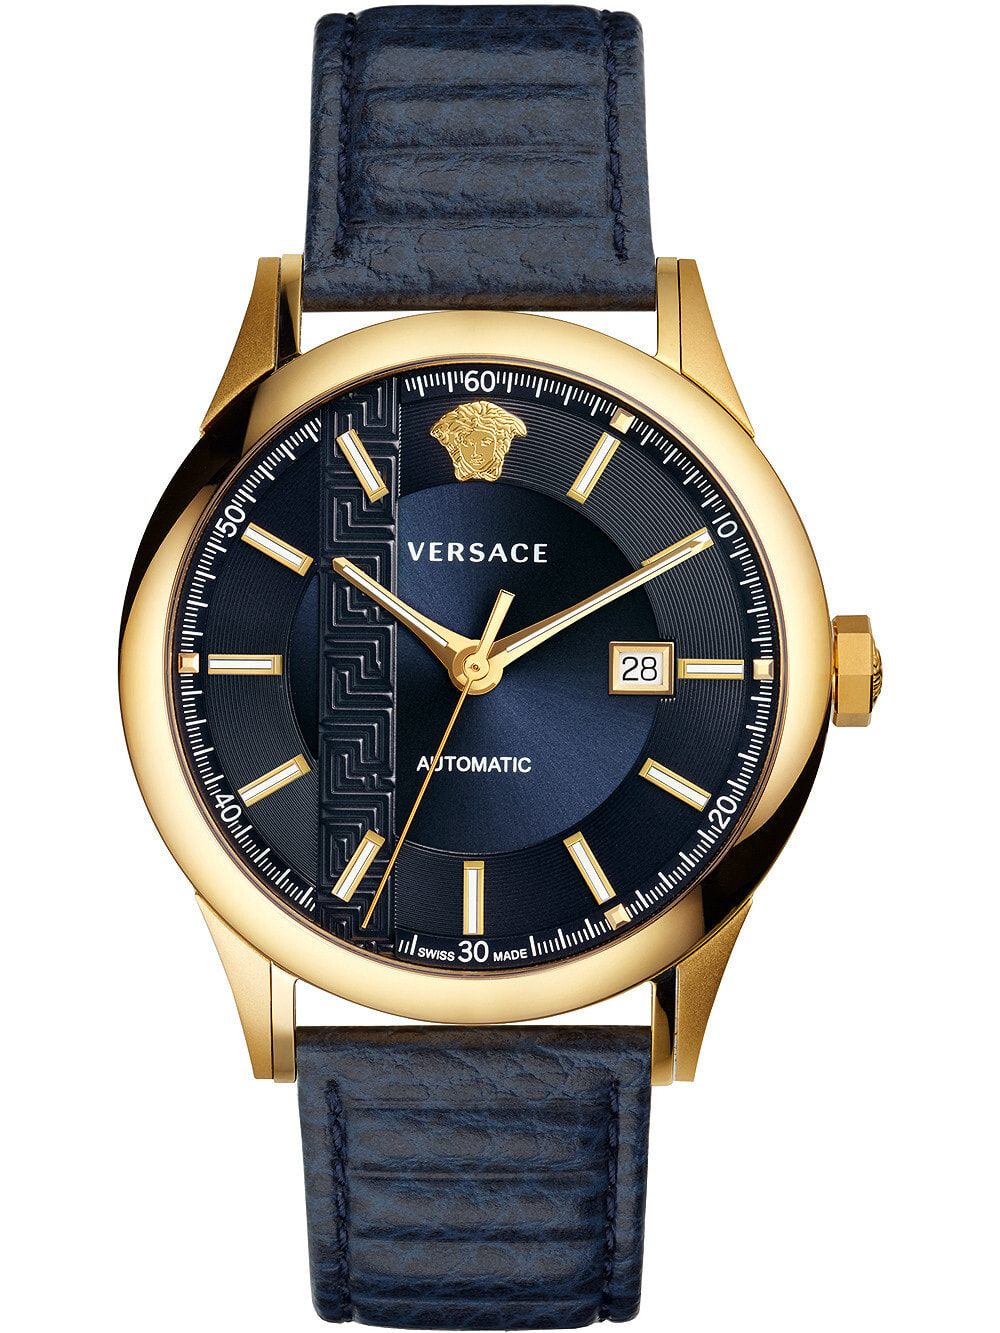 Мужские наручные часы с синим кожаным ремешком Versace V18020017 Aiakos automatic mens 44mm 5ATM